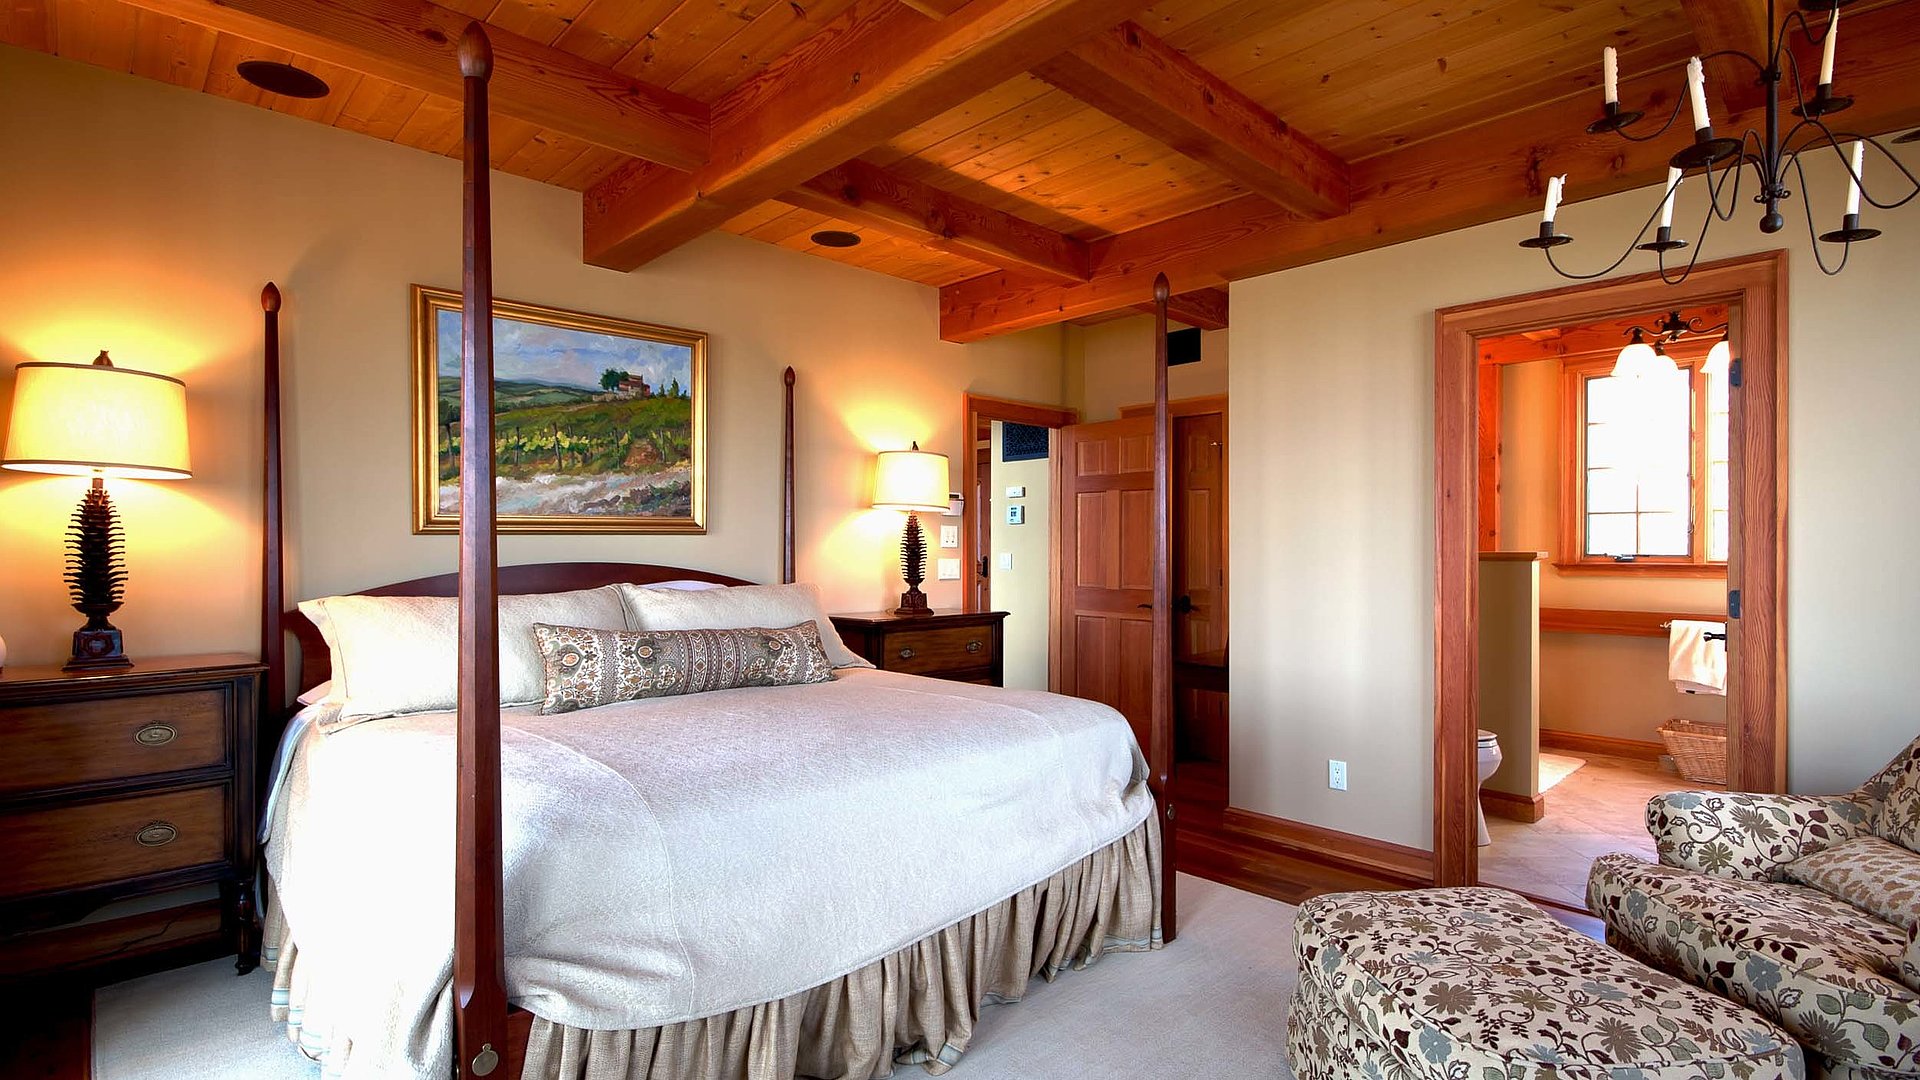 Exklusive Ferienwohnungen in Oberfranken - sehr ordentliches Hotelzimmer mit großem Bett, warmer Nachtlampe und Wandgemälde